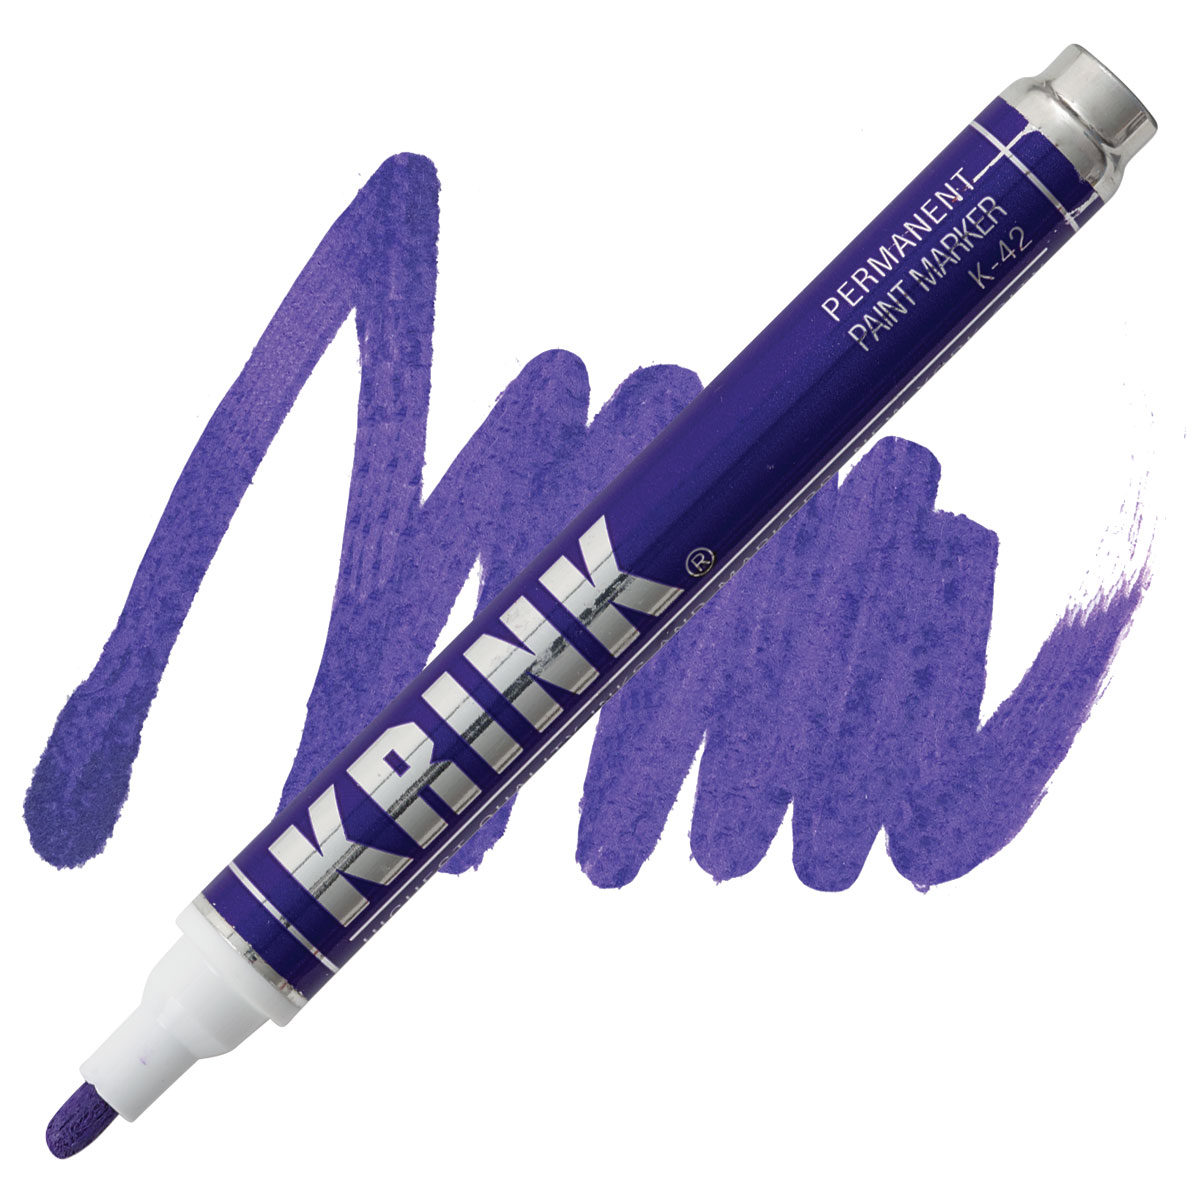 Krink K-42 Paint Marker - Purple